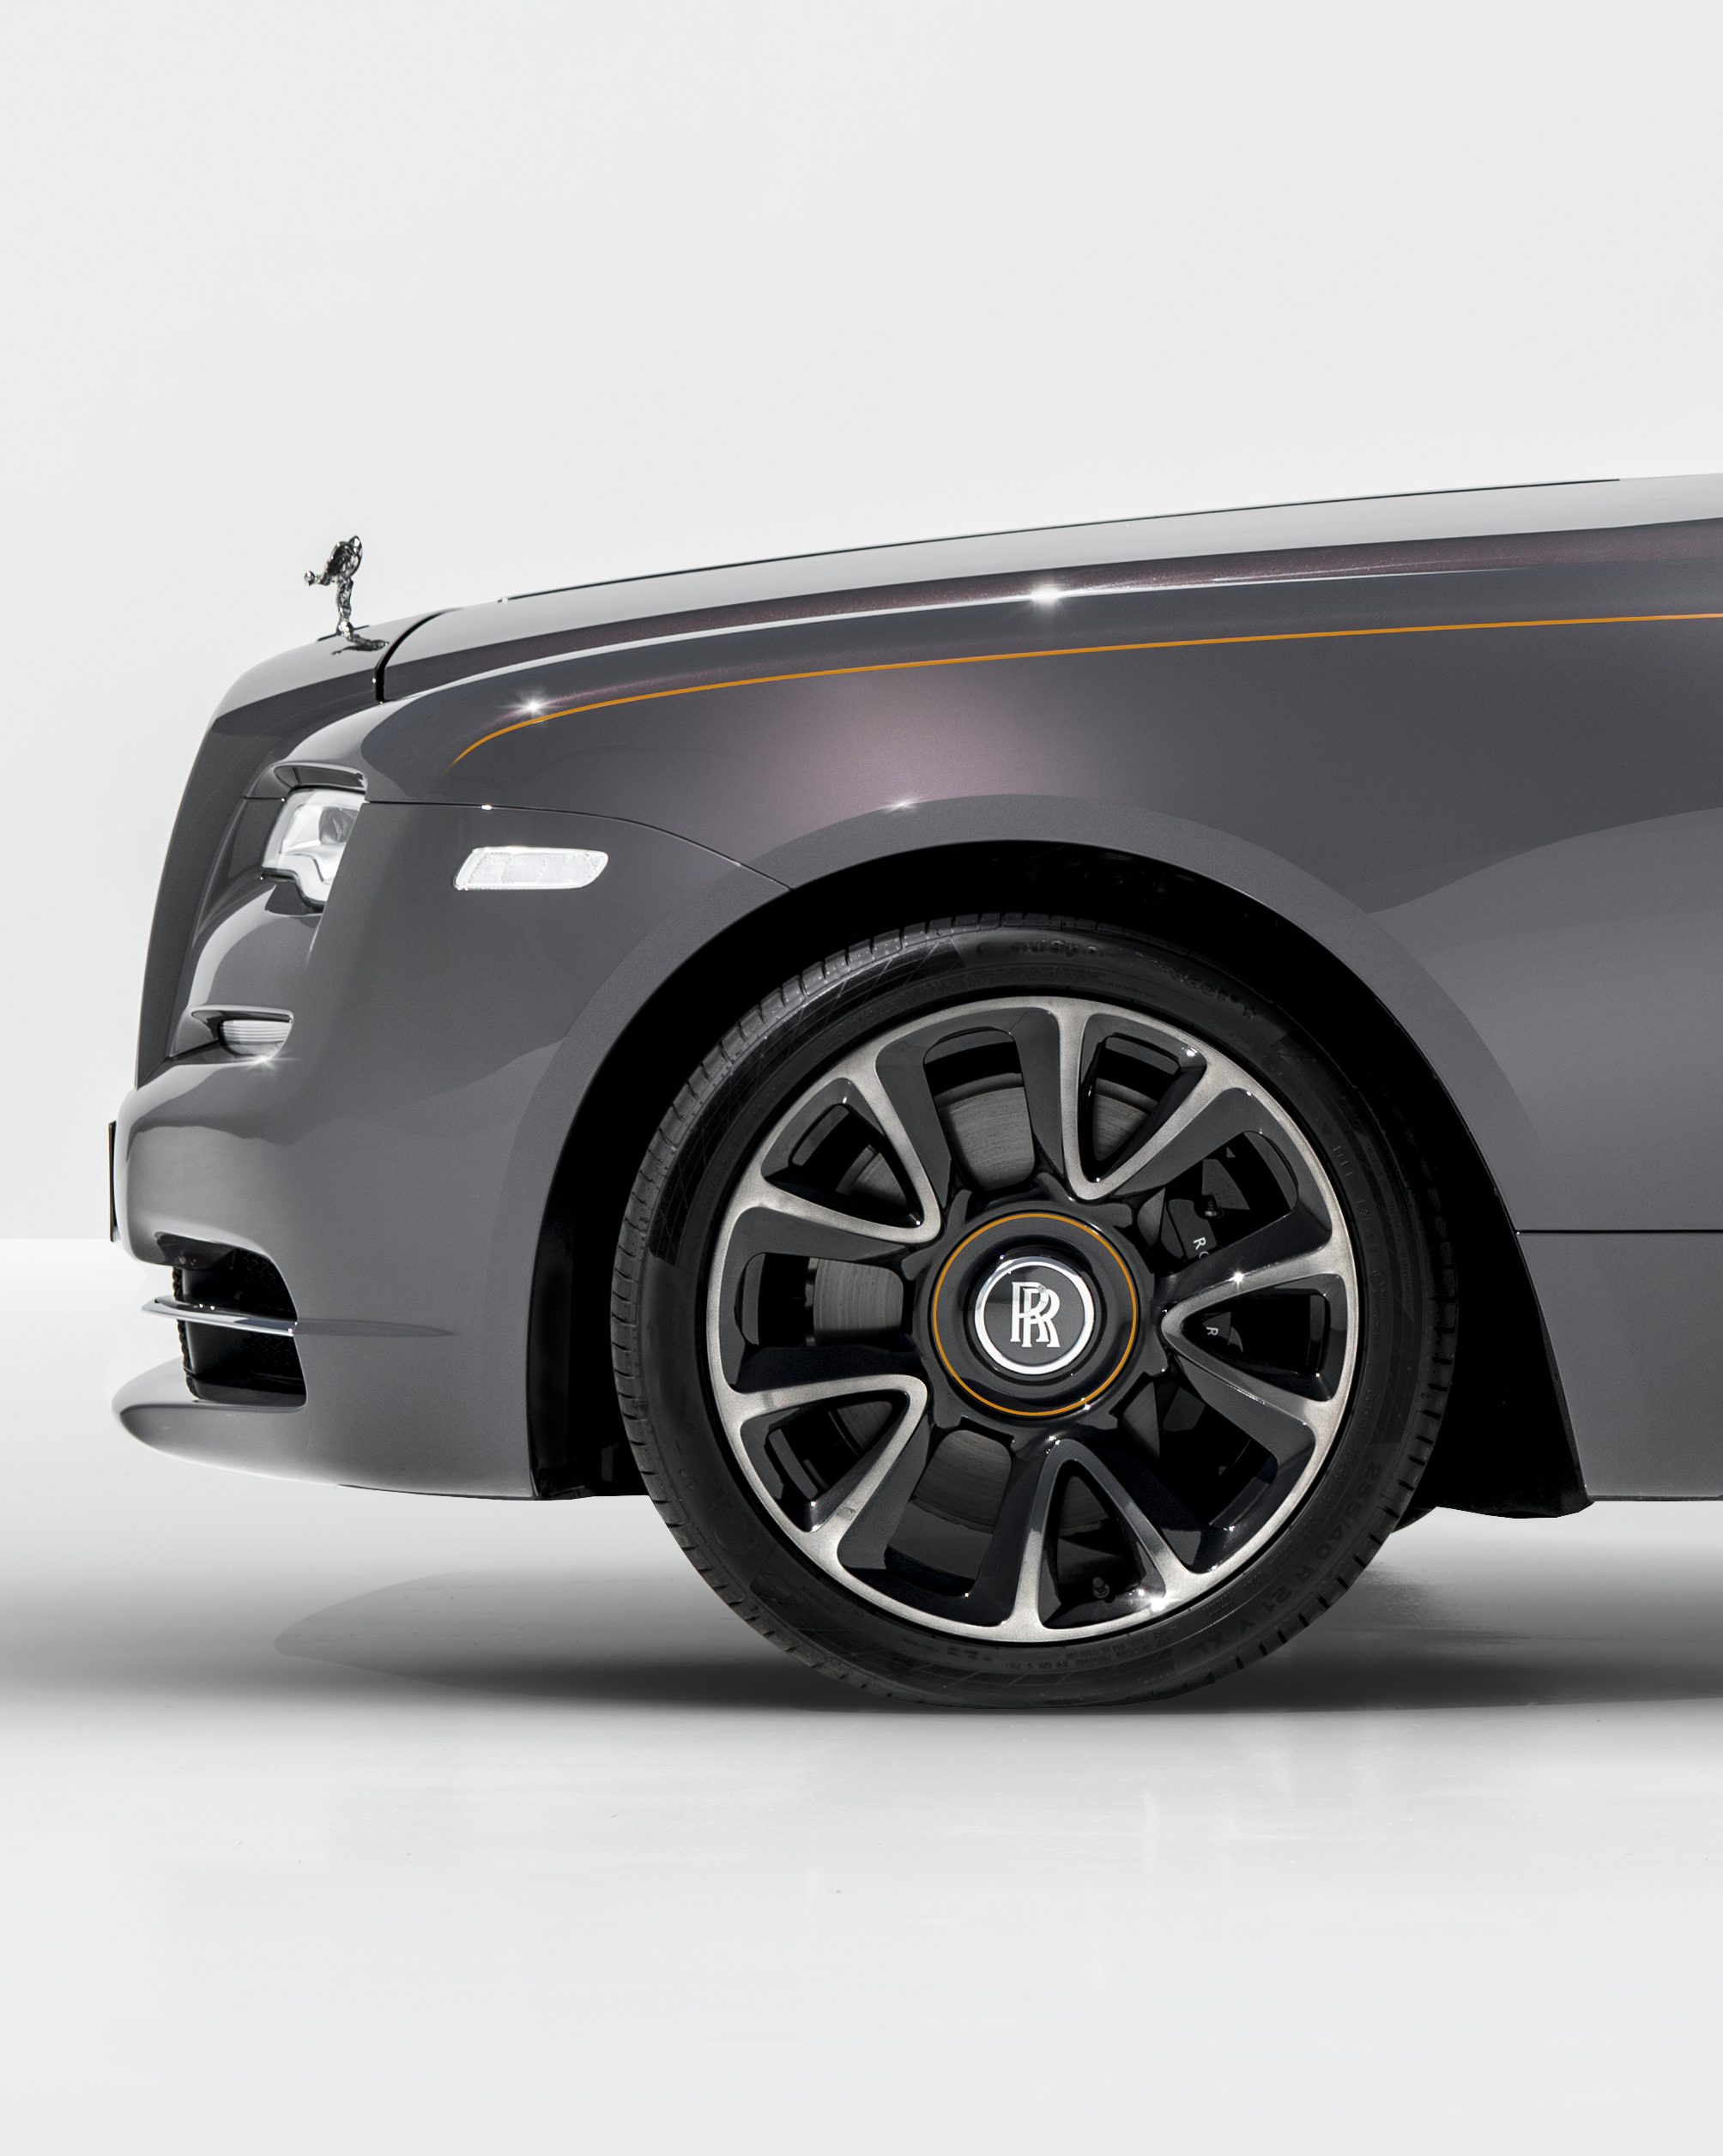 Rolls-Royce Wraith Luminary: Nach den Sternen greifen